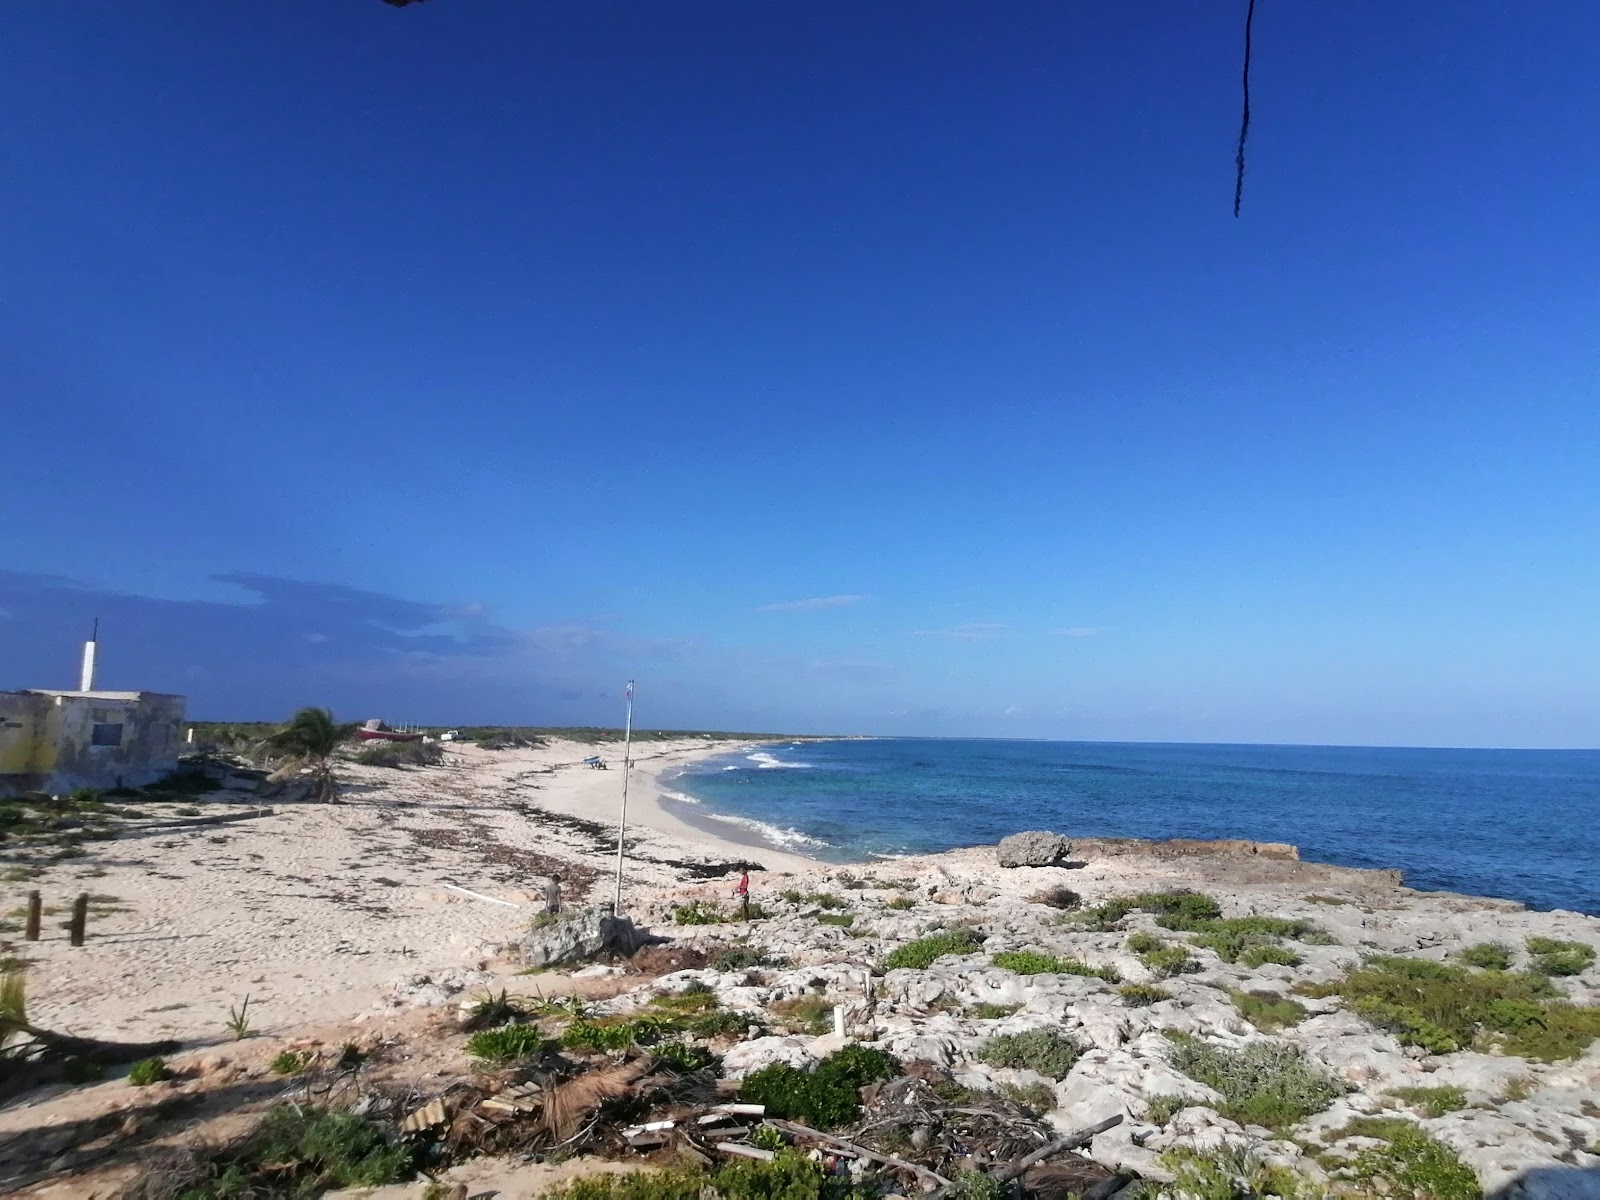 Playa Punta Morena的照片 带有碧绿色纯水表面